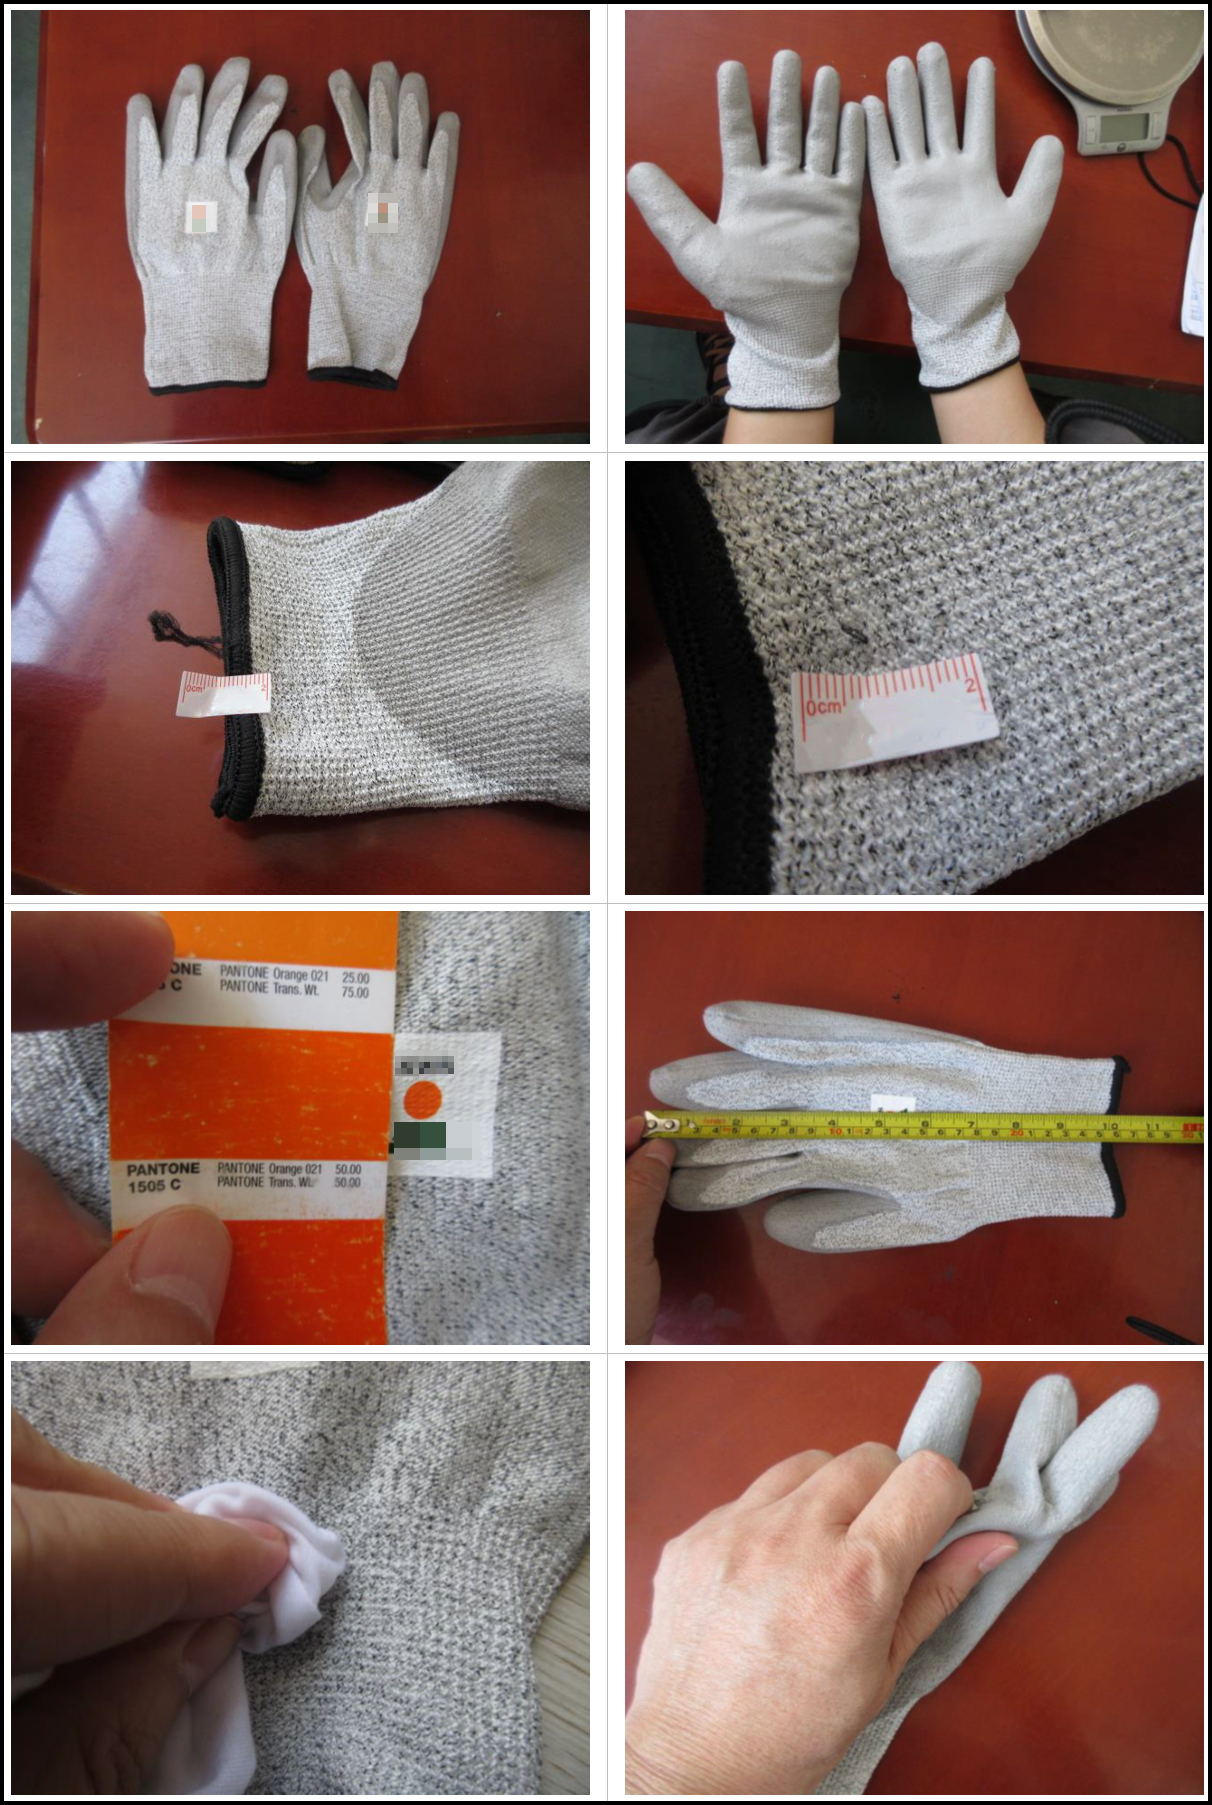 Inspection for Gloves